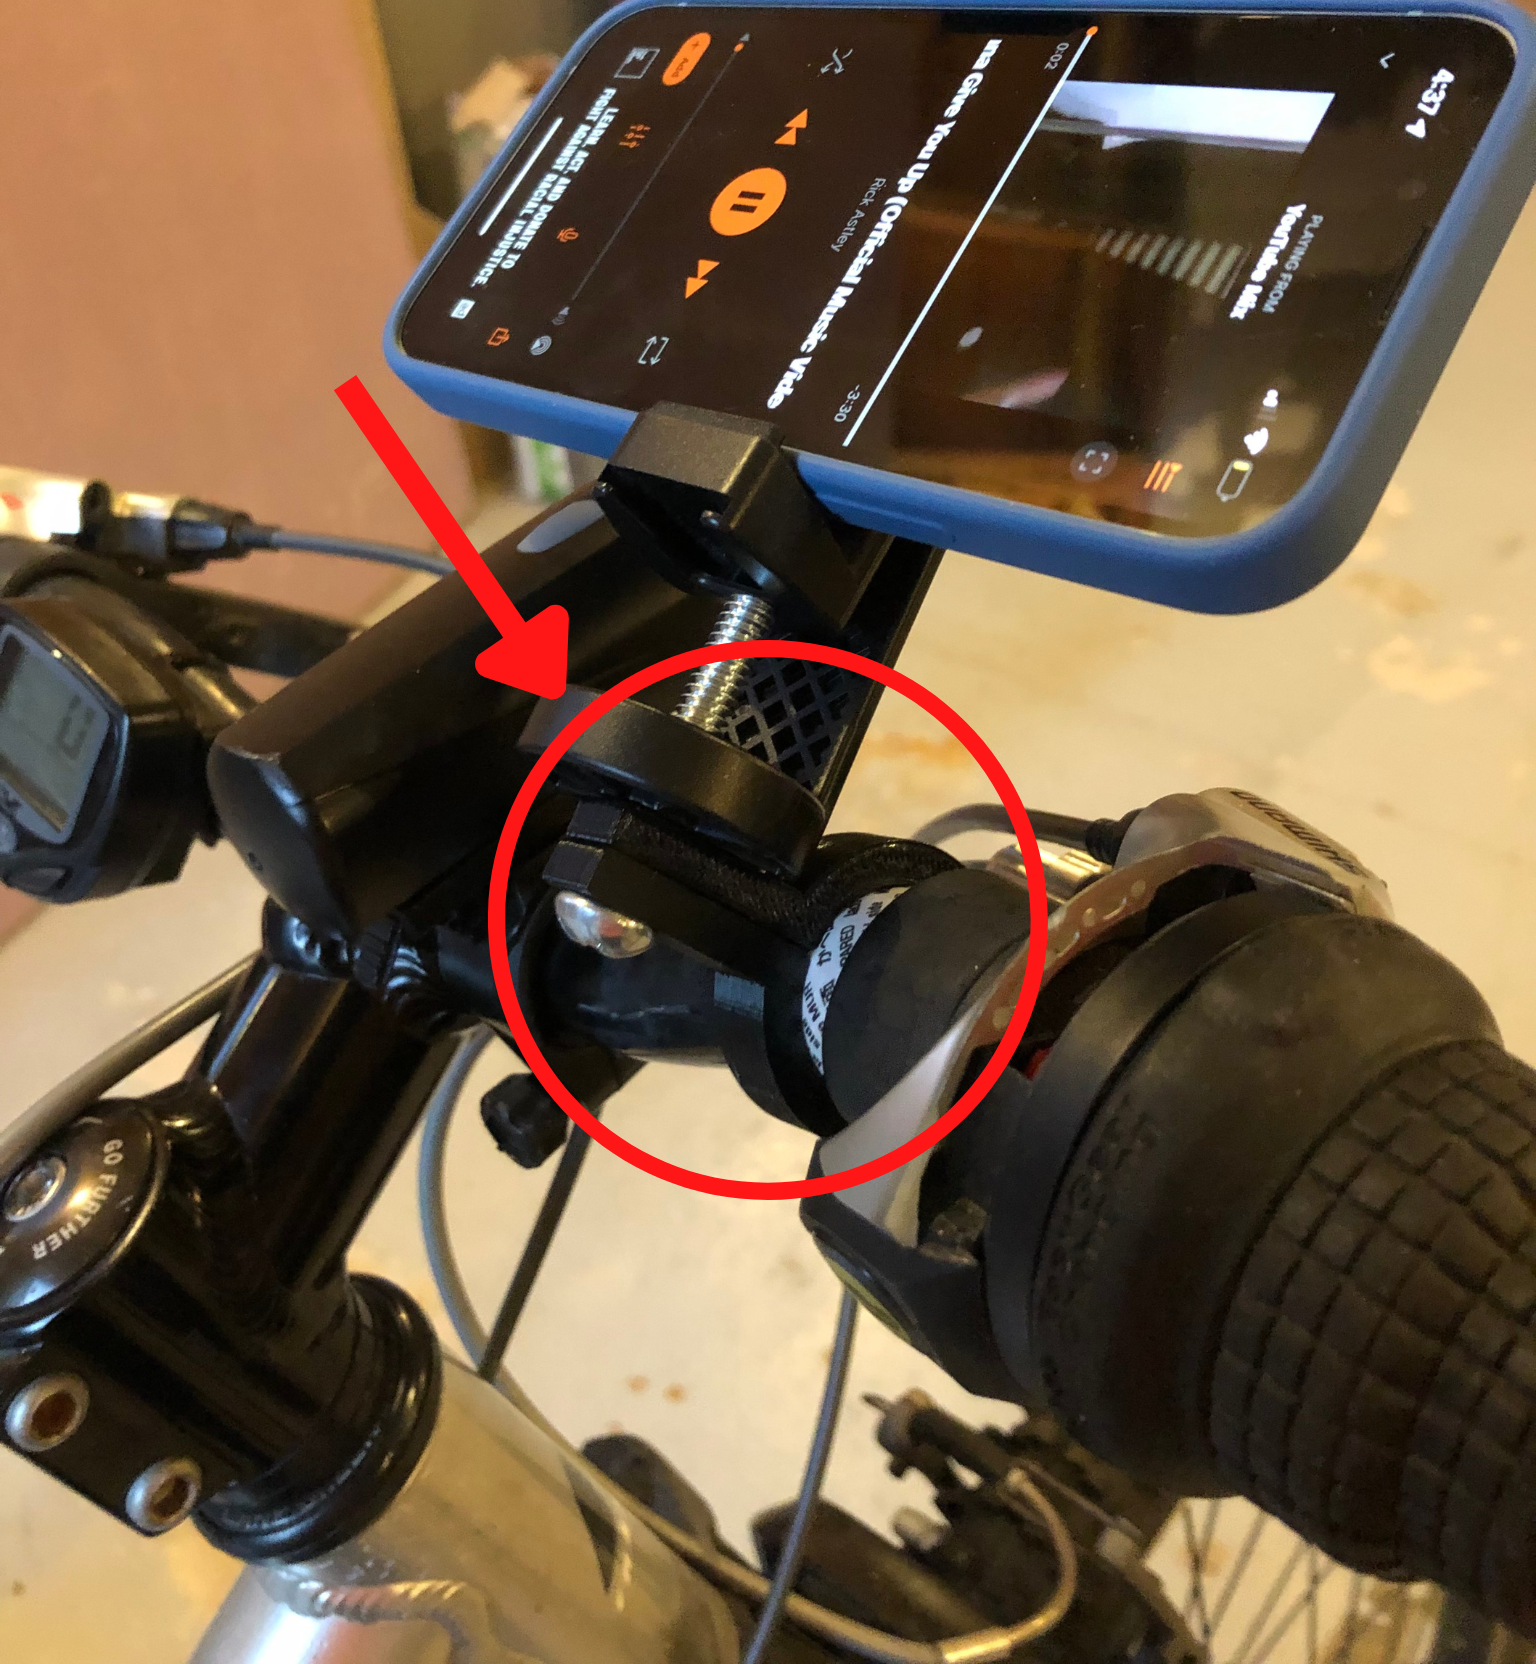 Phone Holder Adapter for Bike